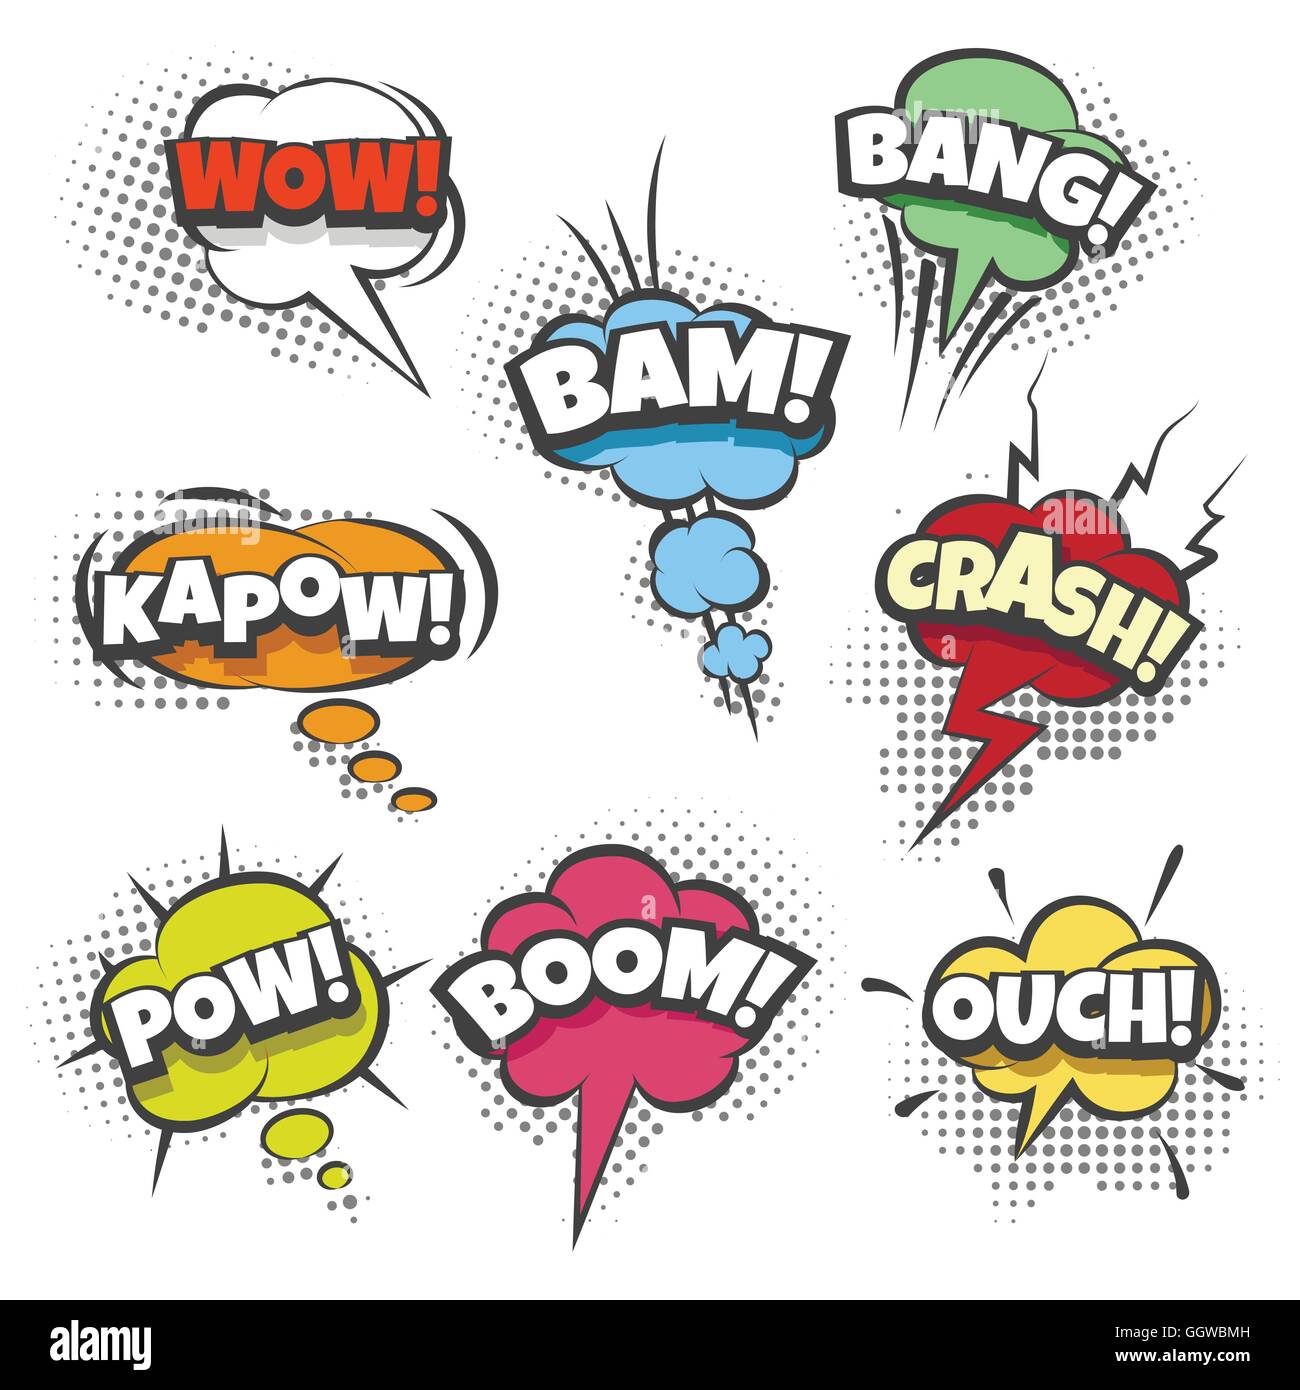 Efectos de sonido de cómic texto en burbujas de sonido. Ilustración de estilo pop art. Ilustración del Vector